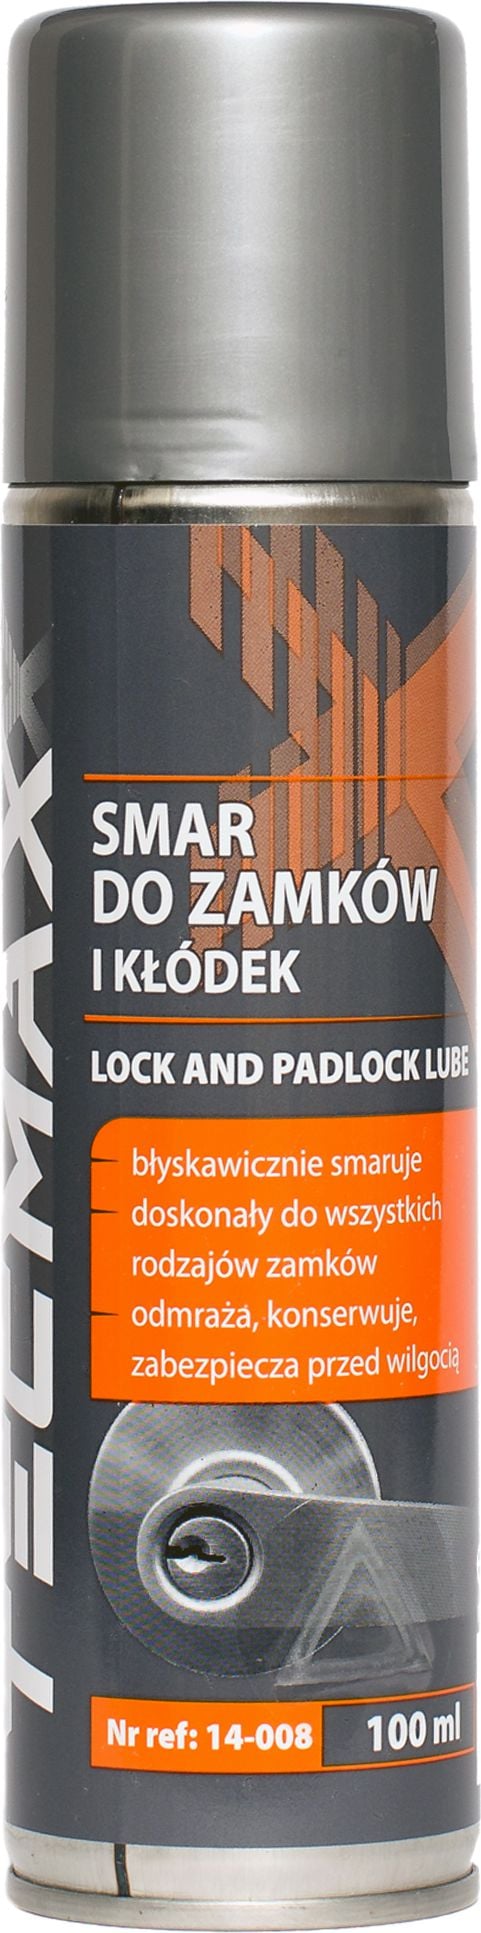 Spray lubrifiant pentru incuietori si lacate-Tecmaxx Lock and padlock lube-spray 100 ml